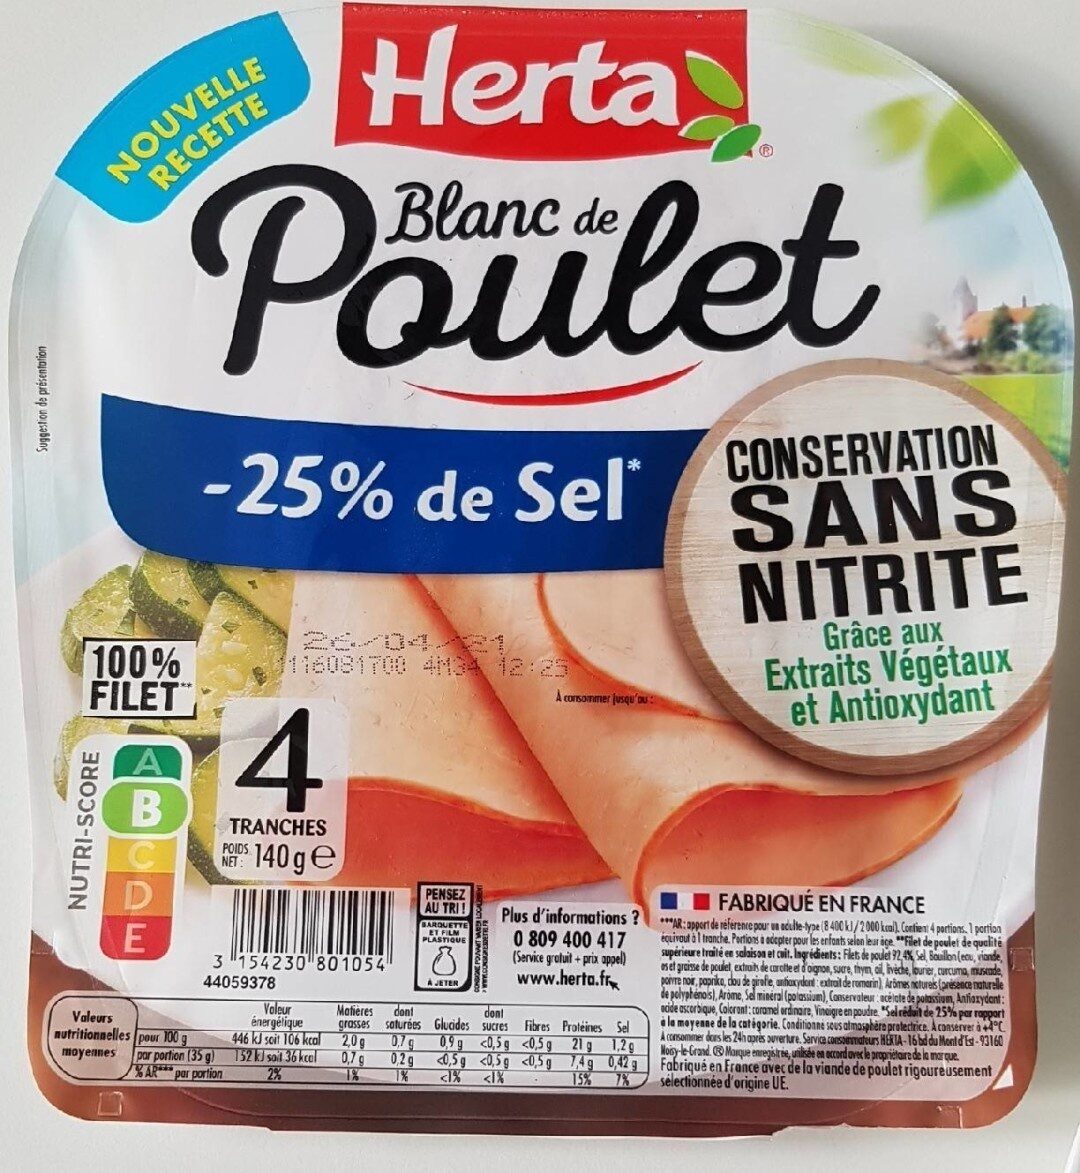 Blanc de poulet sans nitrite -25% de sel - Product - fr